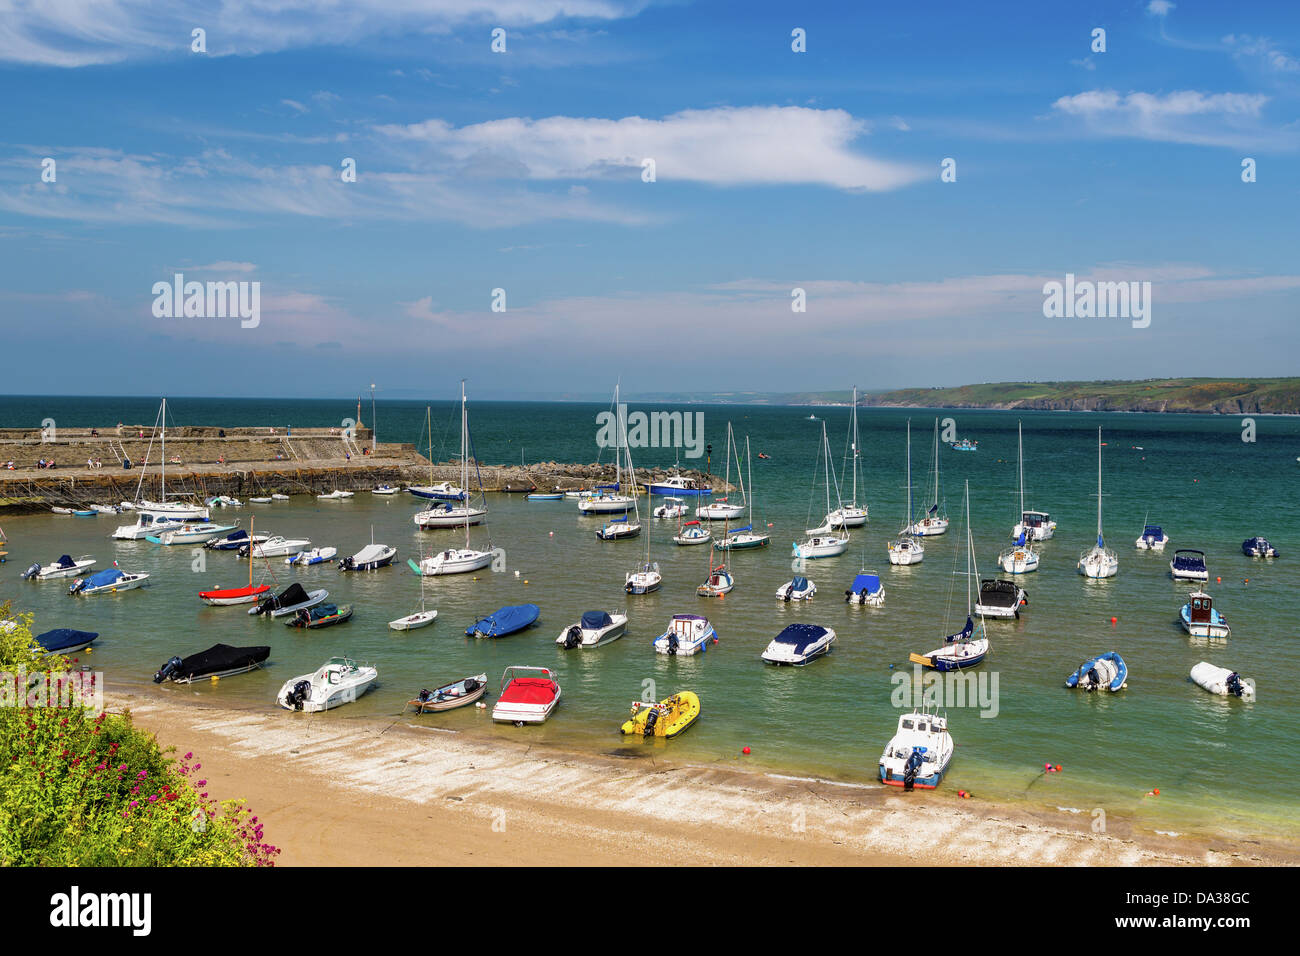 Le port de New Quay, La Baie de Cardigan au Pays de Galles avec yachts flottante. Banque D'Images